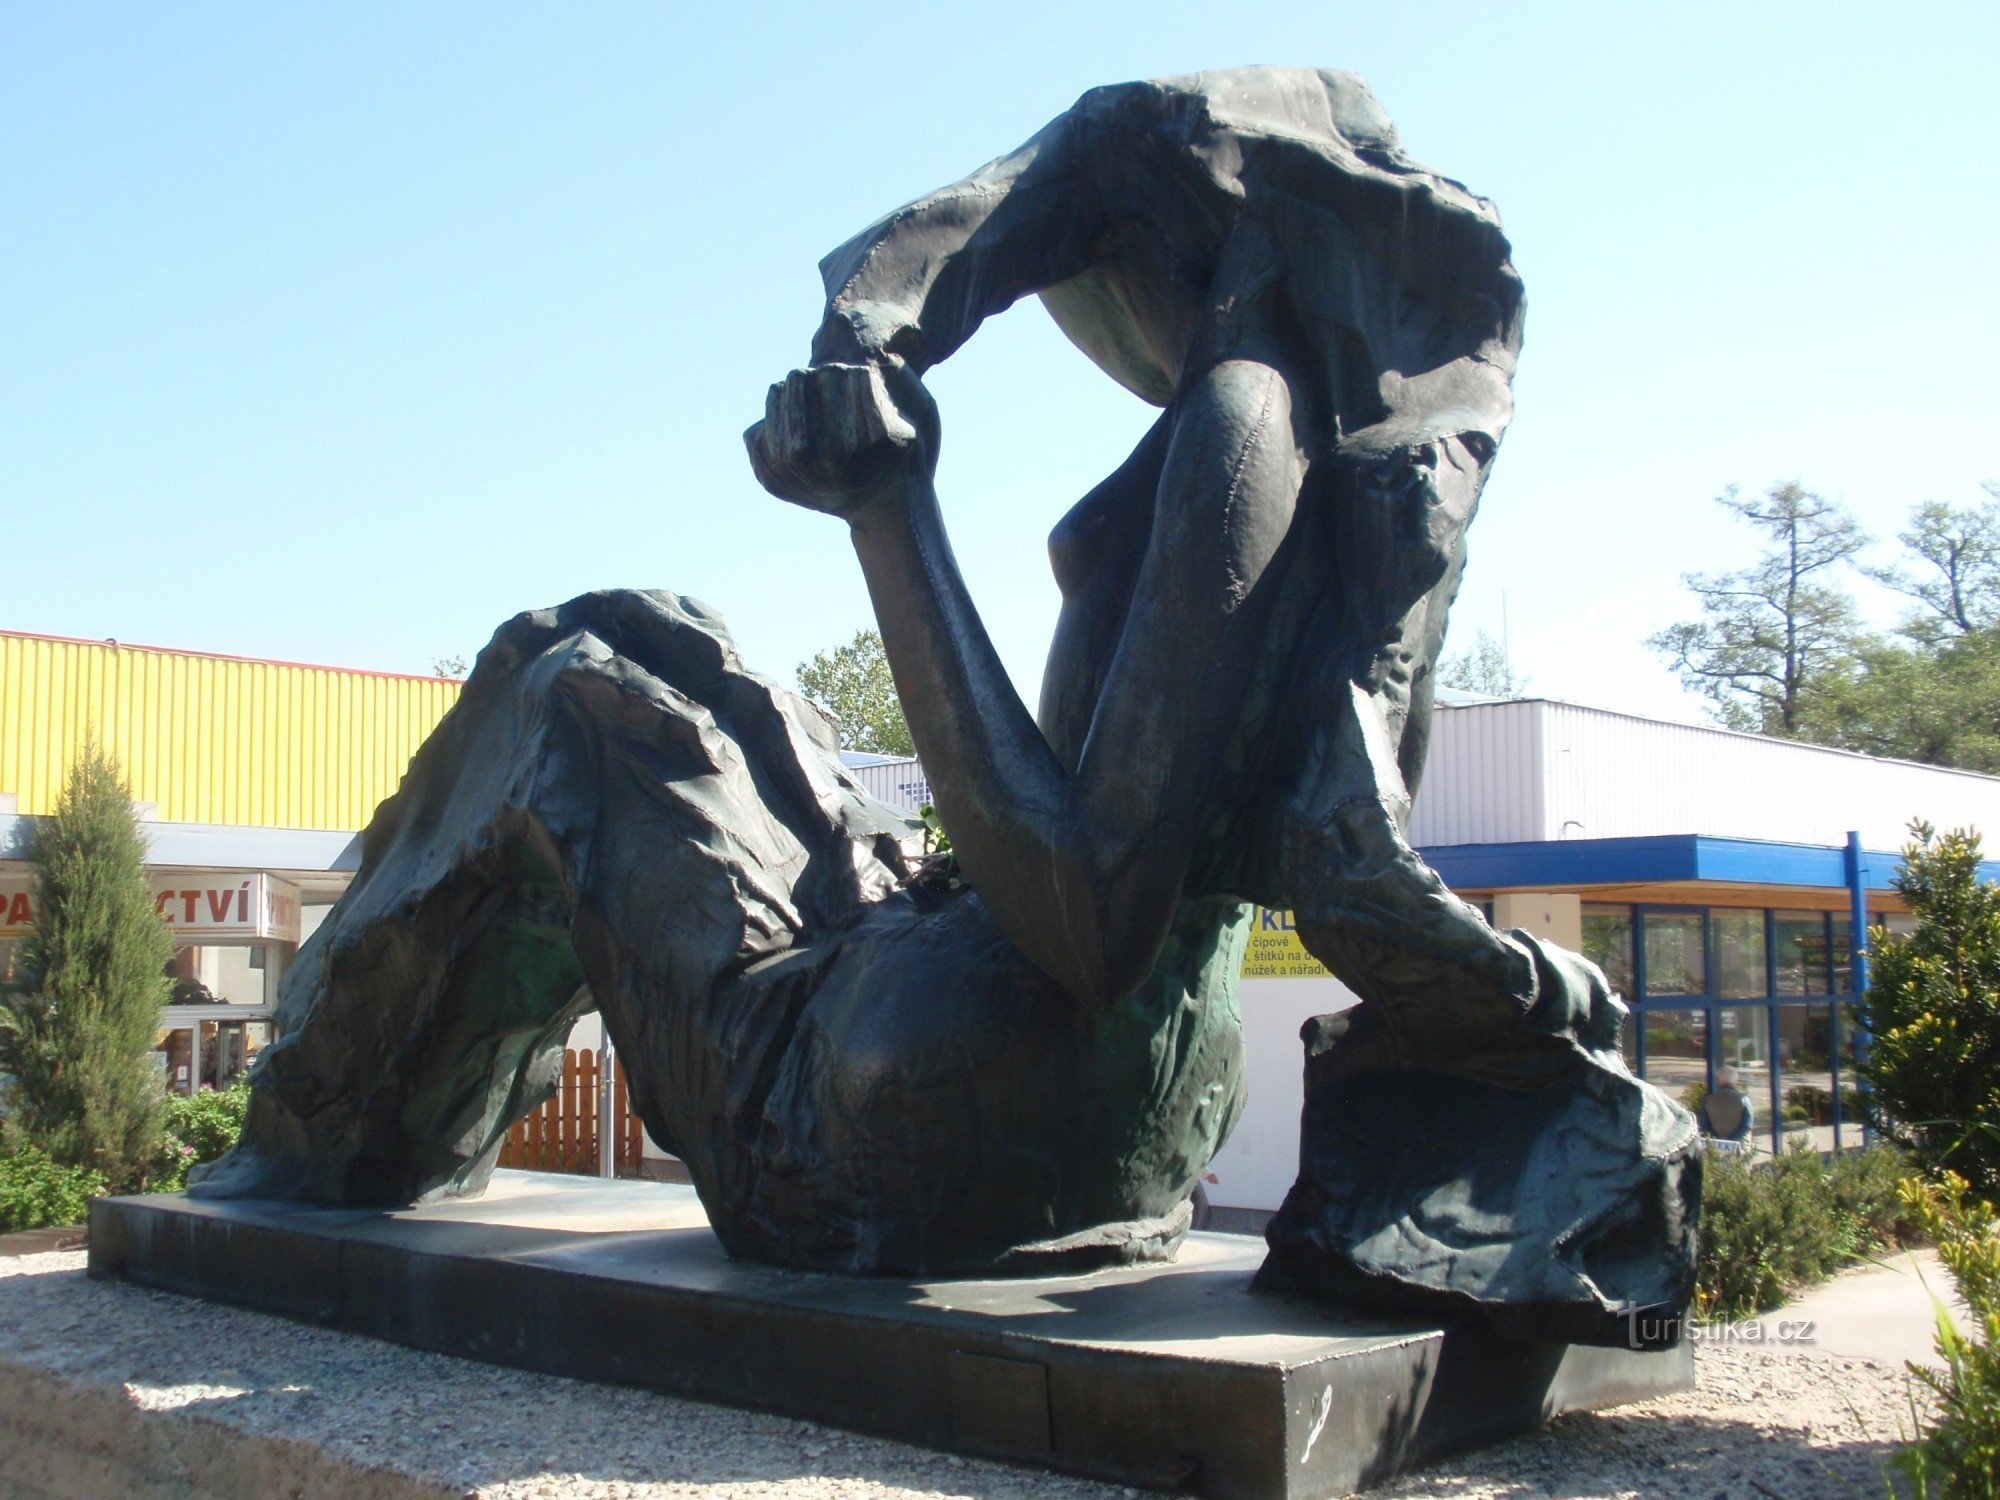 Статуя Высочины II работы Иржи Марека в Ждяре-над-Сазавой